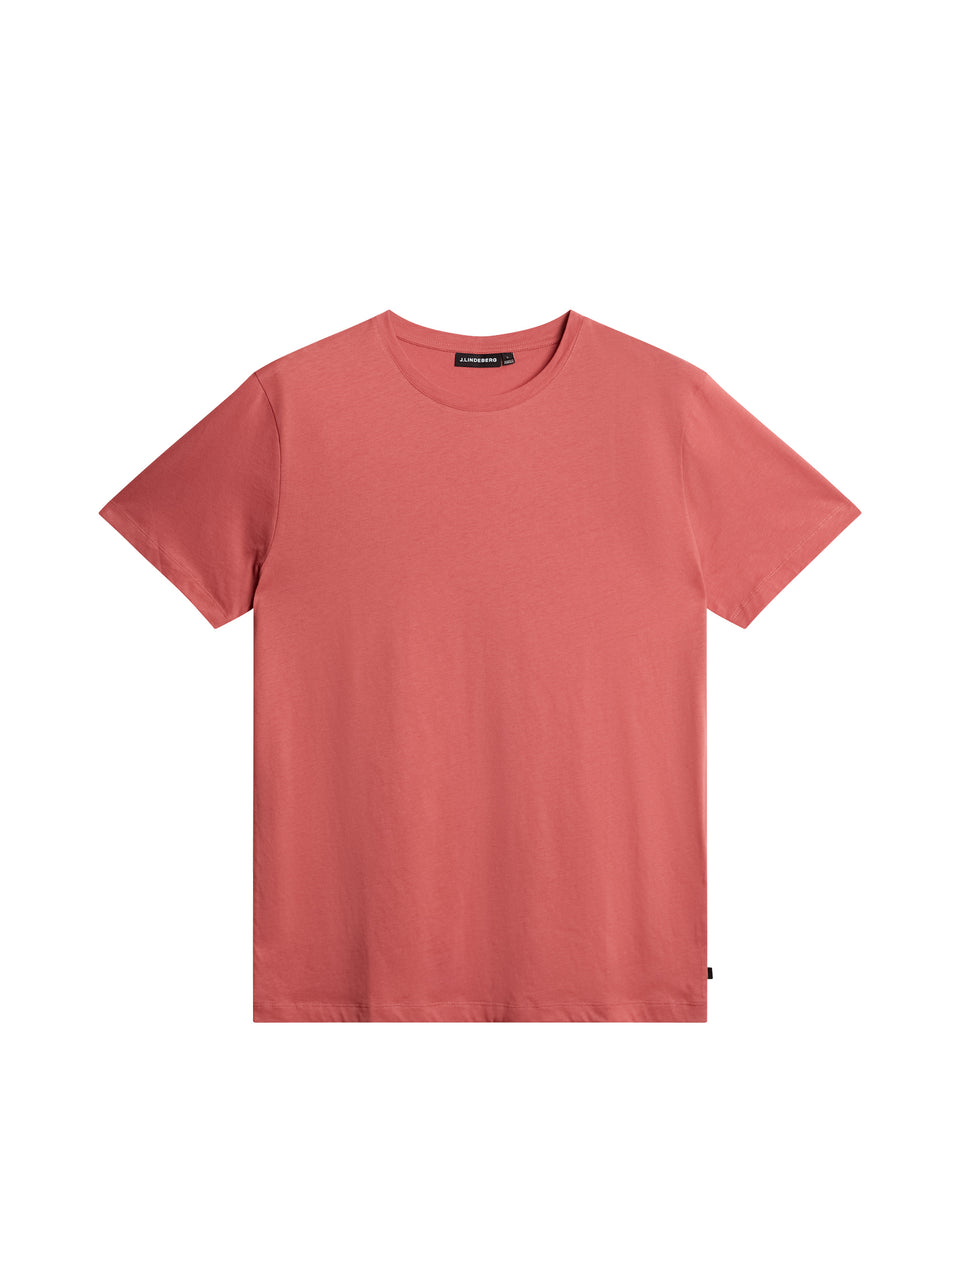 Sid Basic T-Shirt / Dusty Cedar